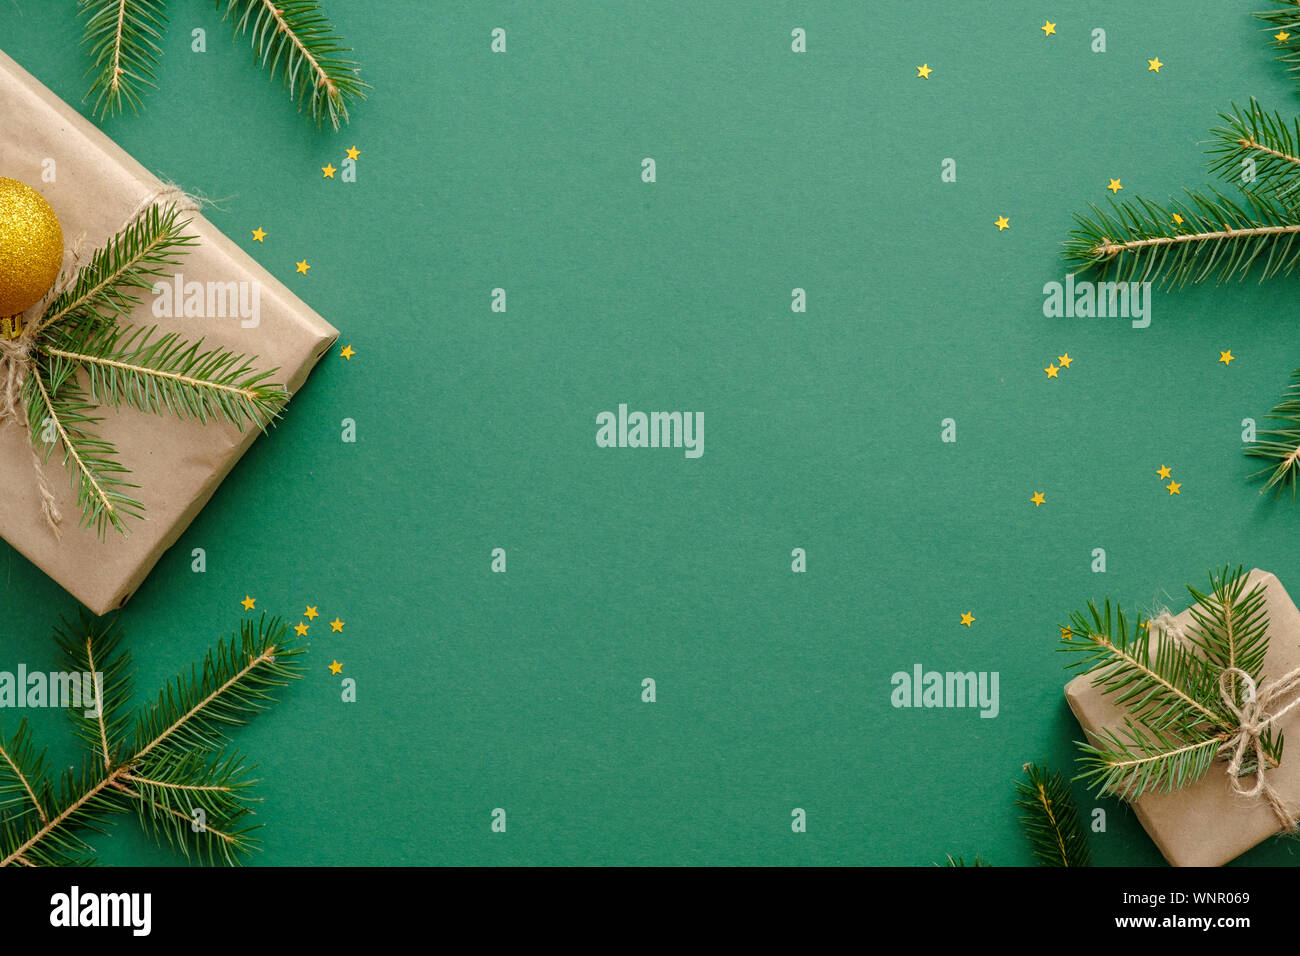 Natale flatlay composizione o il telaio con i regali di Natale, Abete rami, decorazione su sfondo verde. Appartamento laico, vista dall'alto, overhead. Xmas Foto Stock